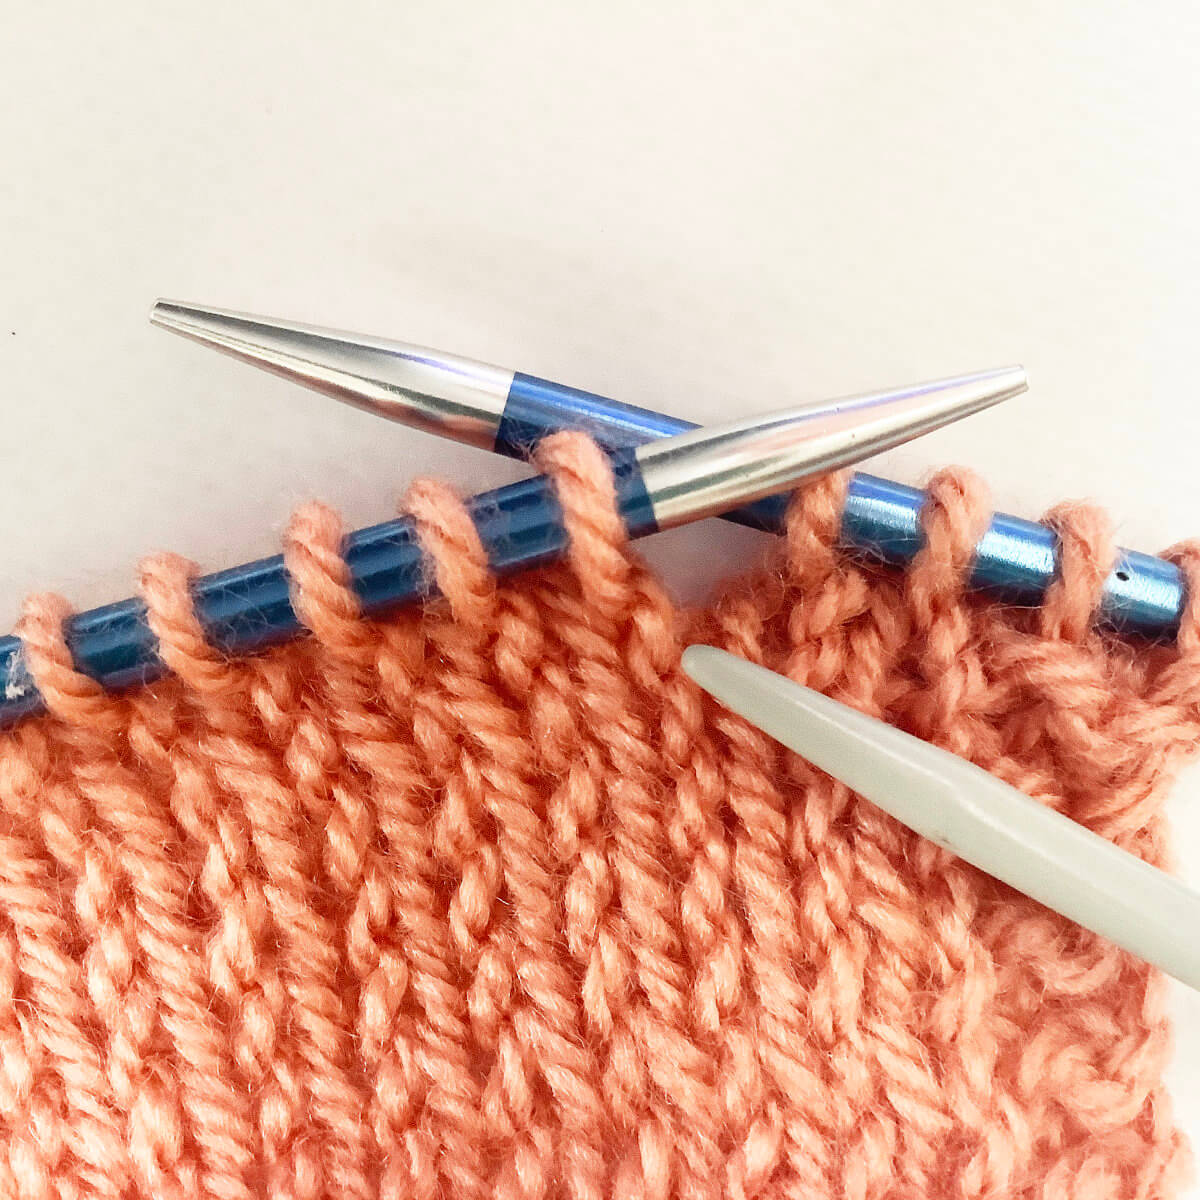 knit 1 below - step 2